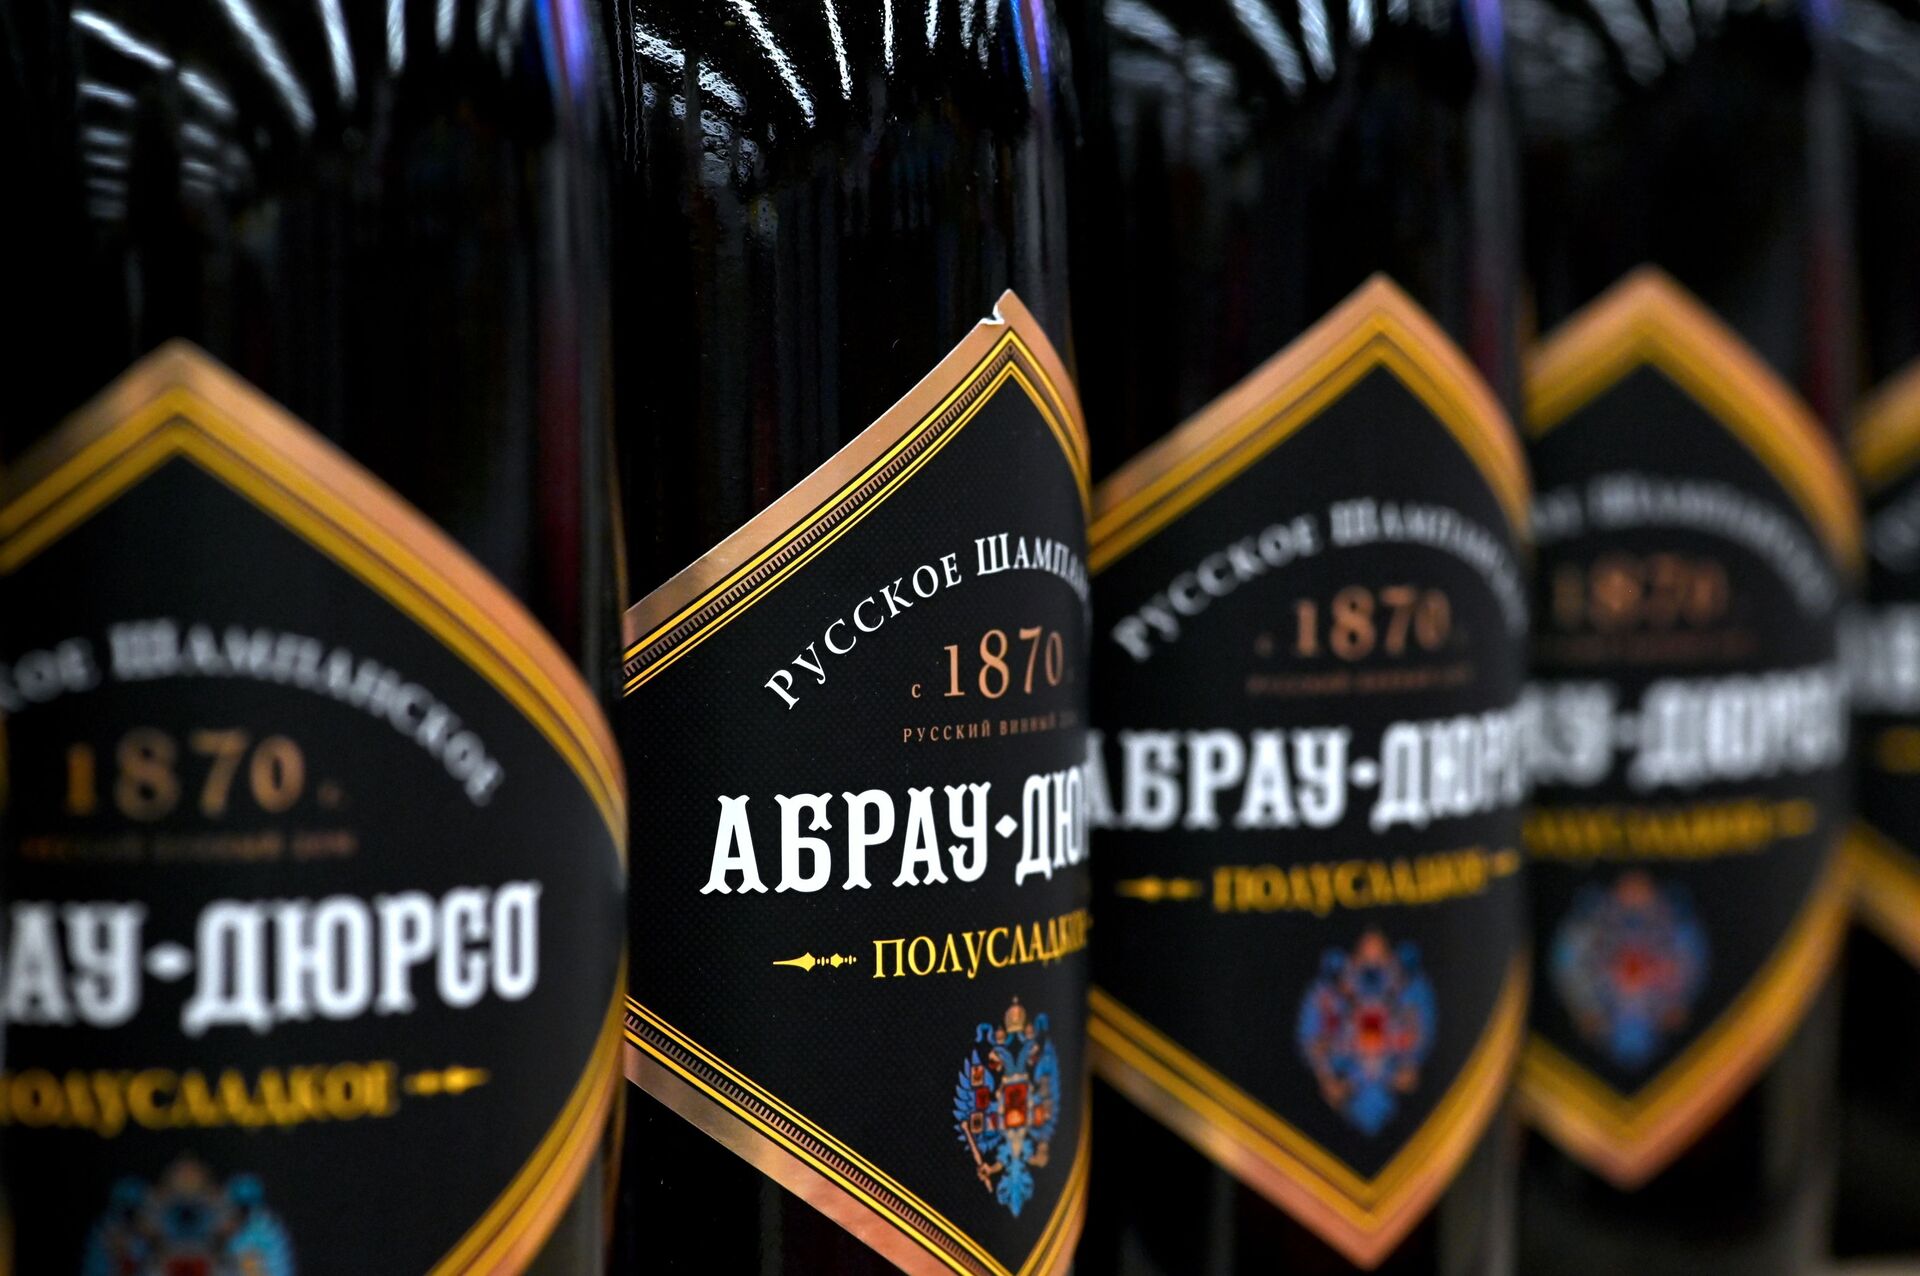 Champagne bottles at a Moscow supermarket - Sputnik International, 1920, 07.09.2021